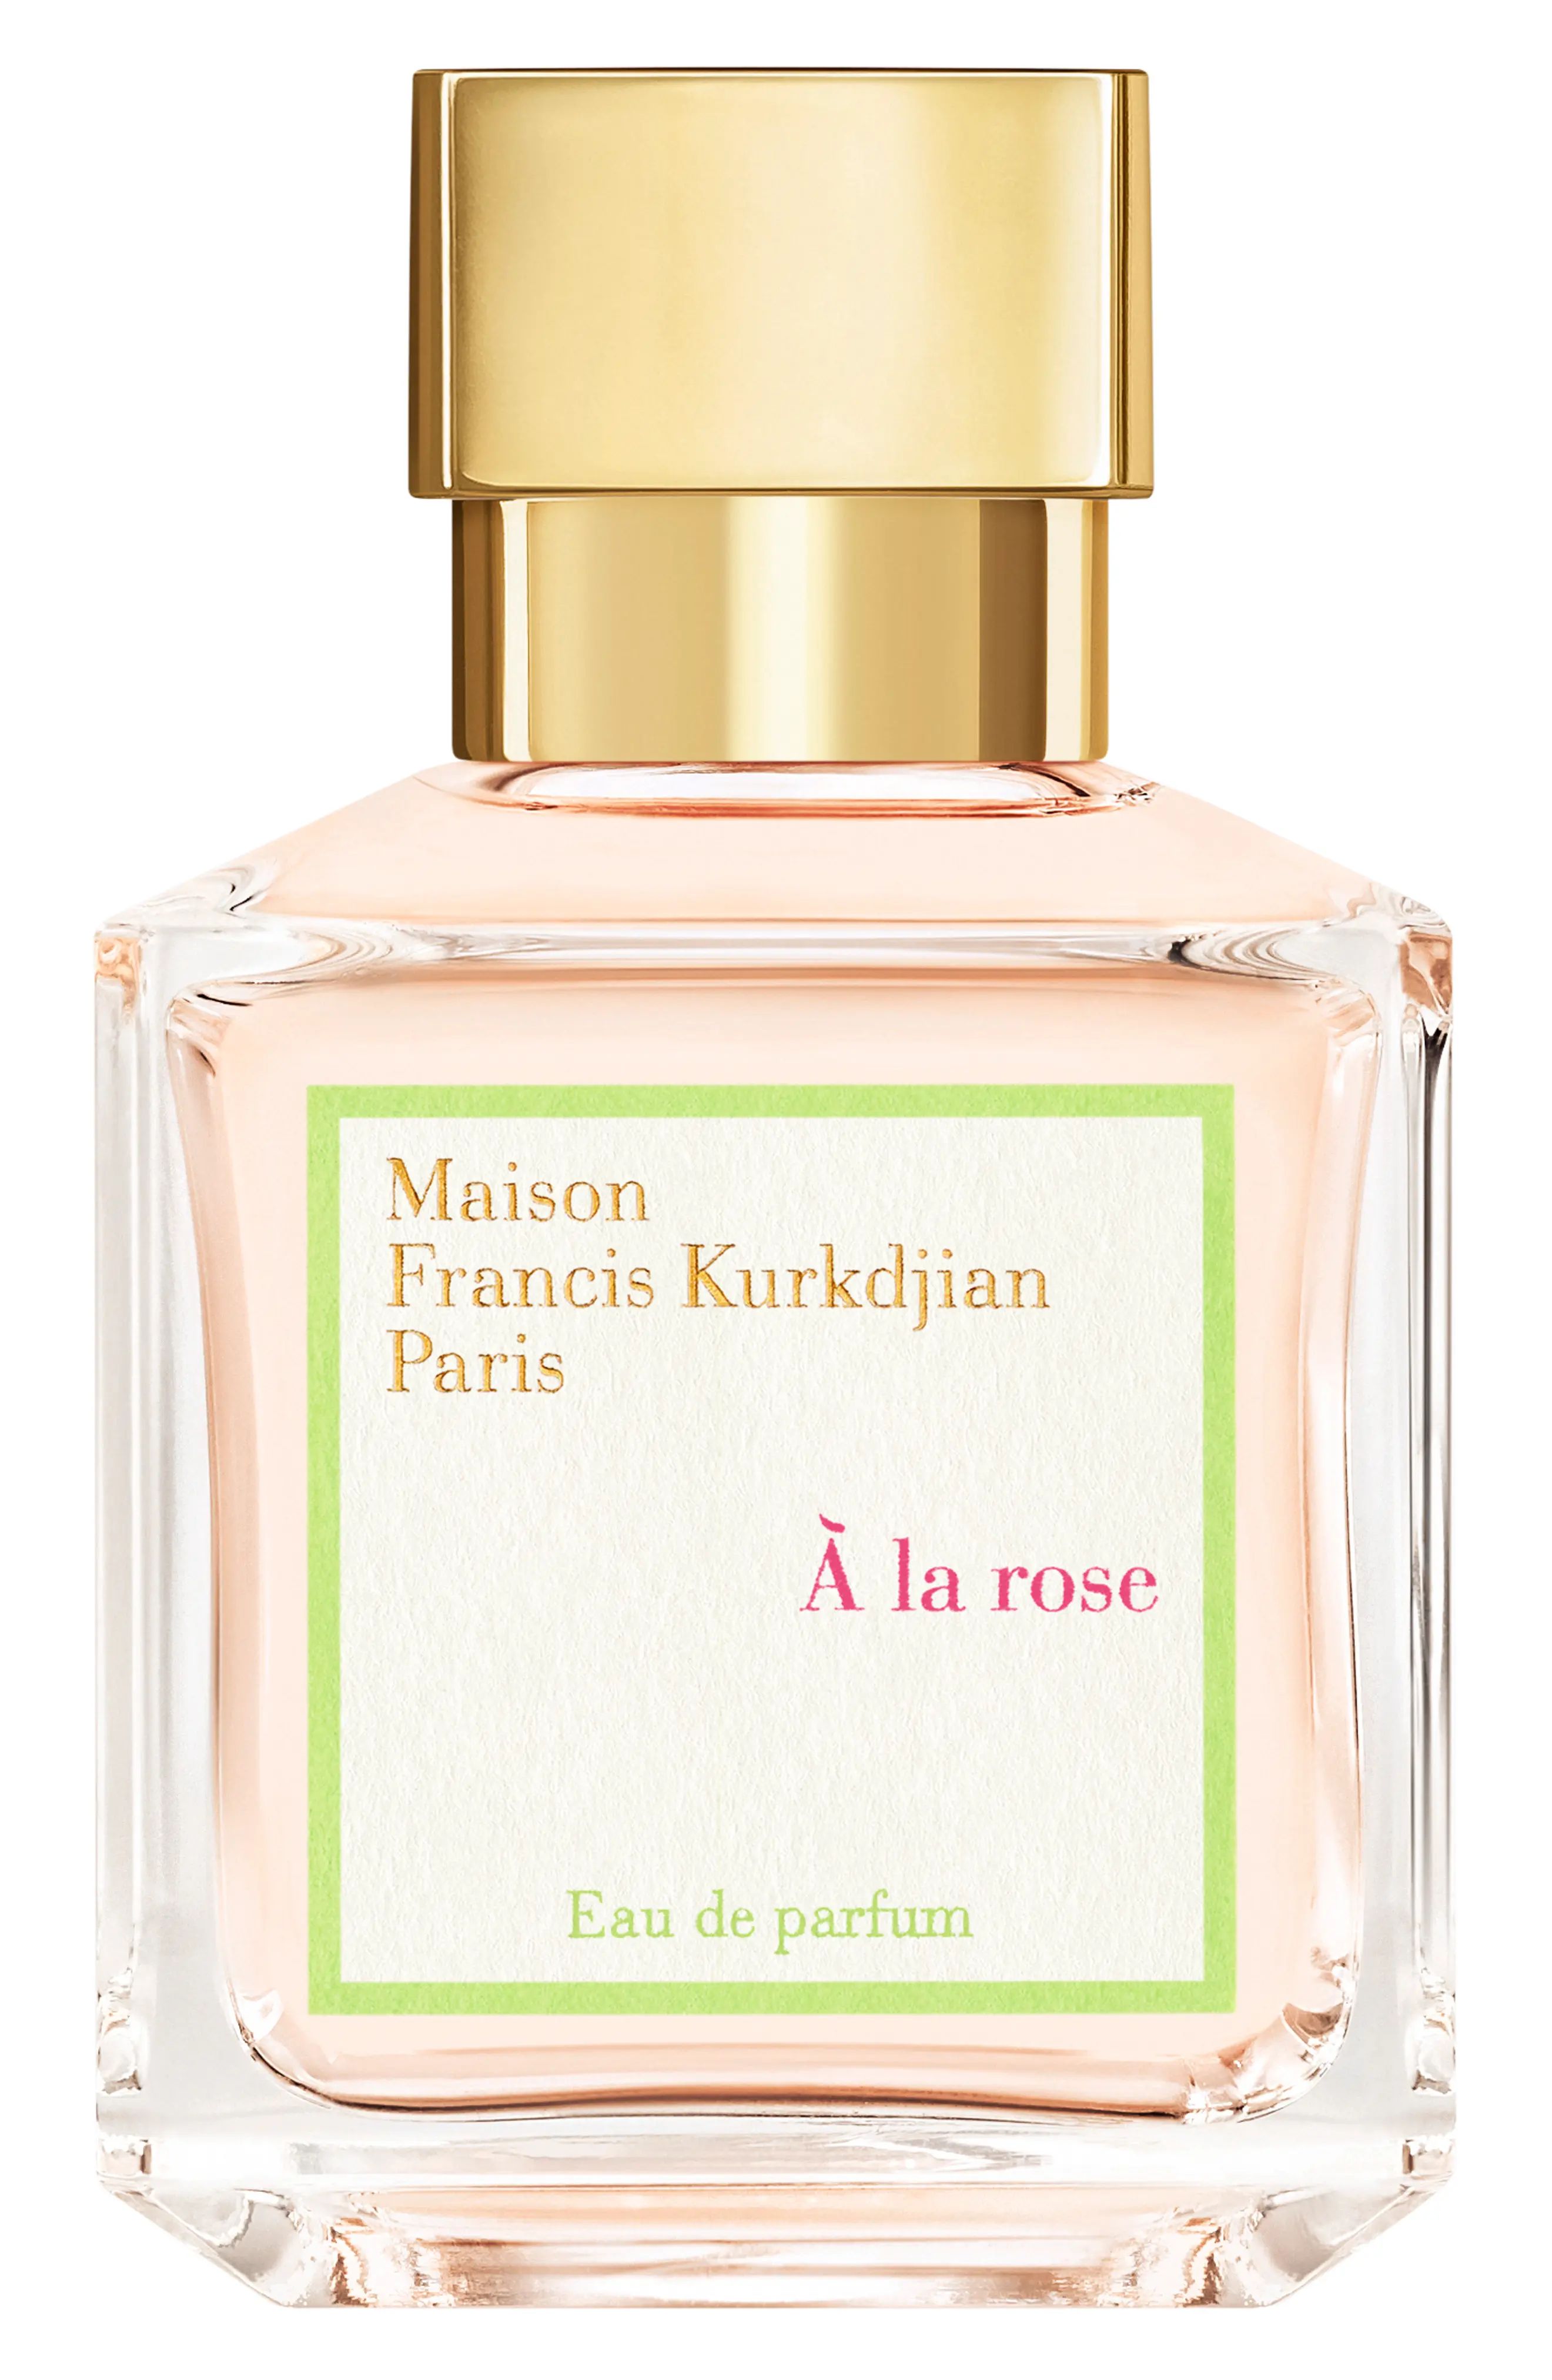 Maison Francis Kurkdjian Paris A La Rose Eau de Parfum at Nordstrom, Size 2.4 Oz | Nordstrom